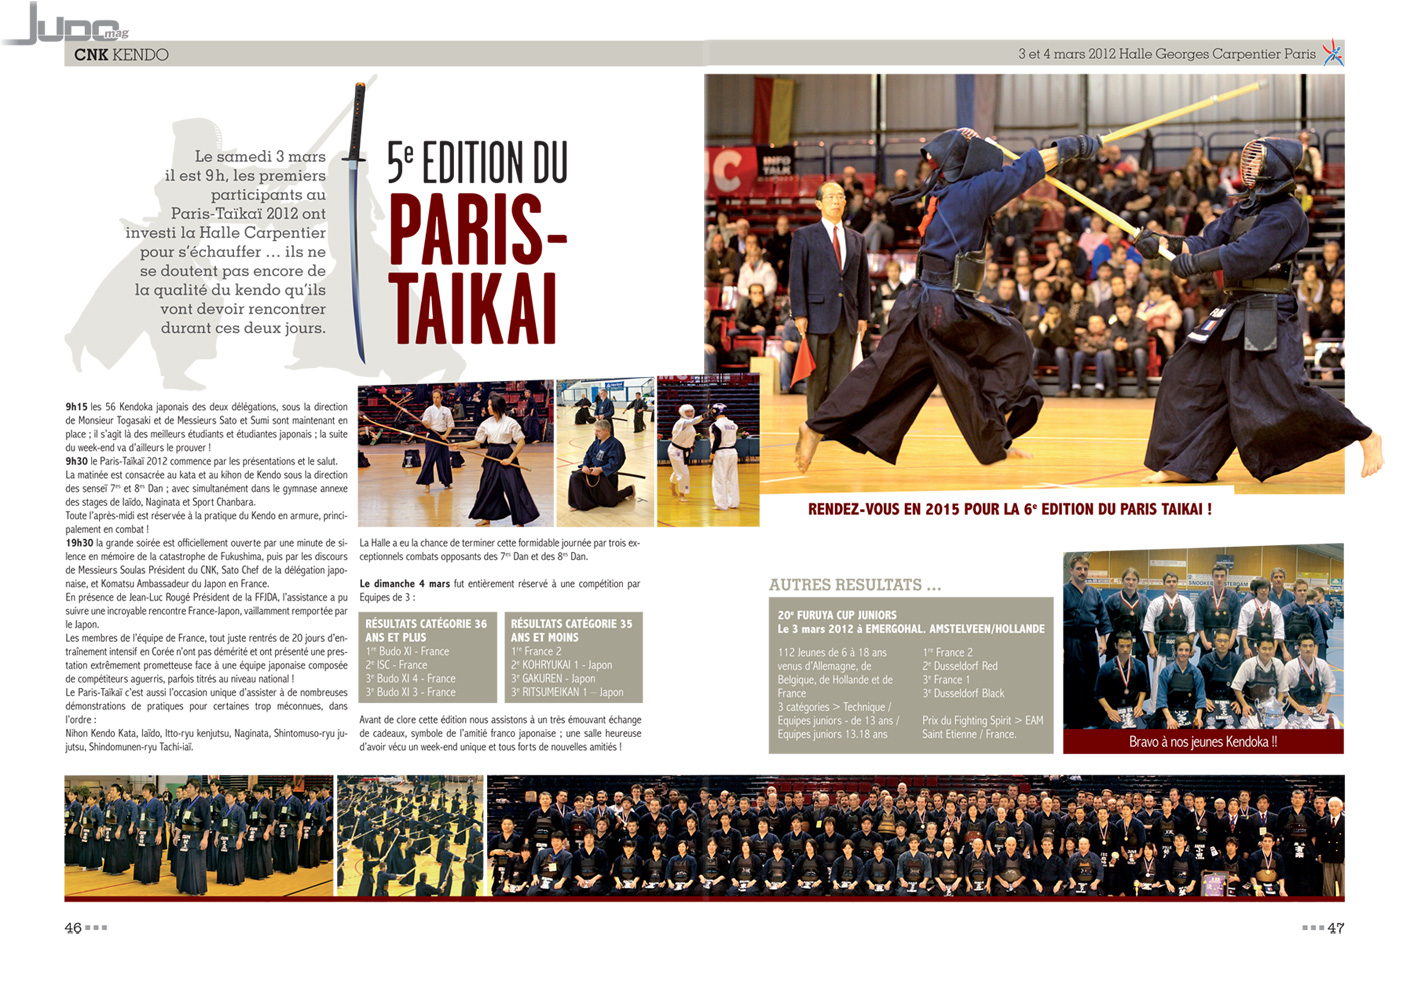 Judo Magazine, numero 279, Mars 2012, Paris Taïkaï, CNK, Comité National de kendo